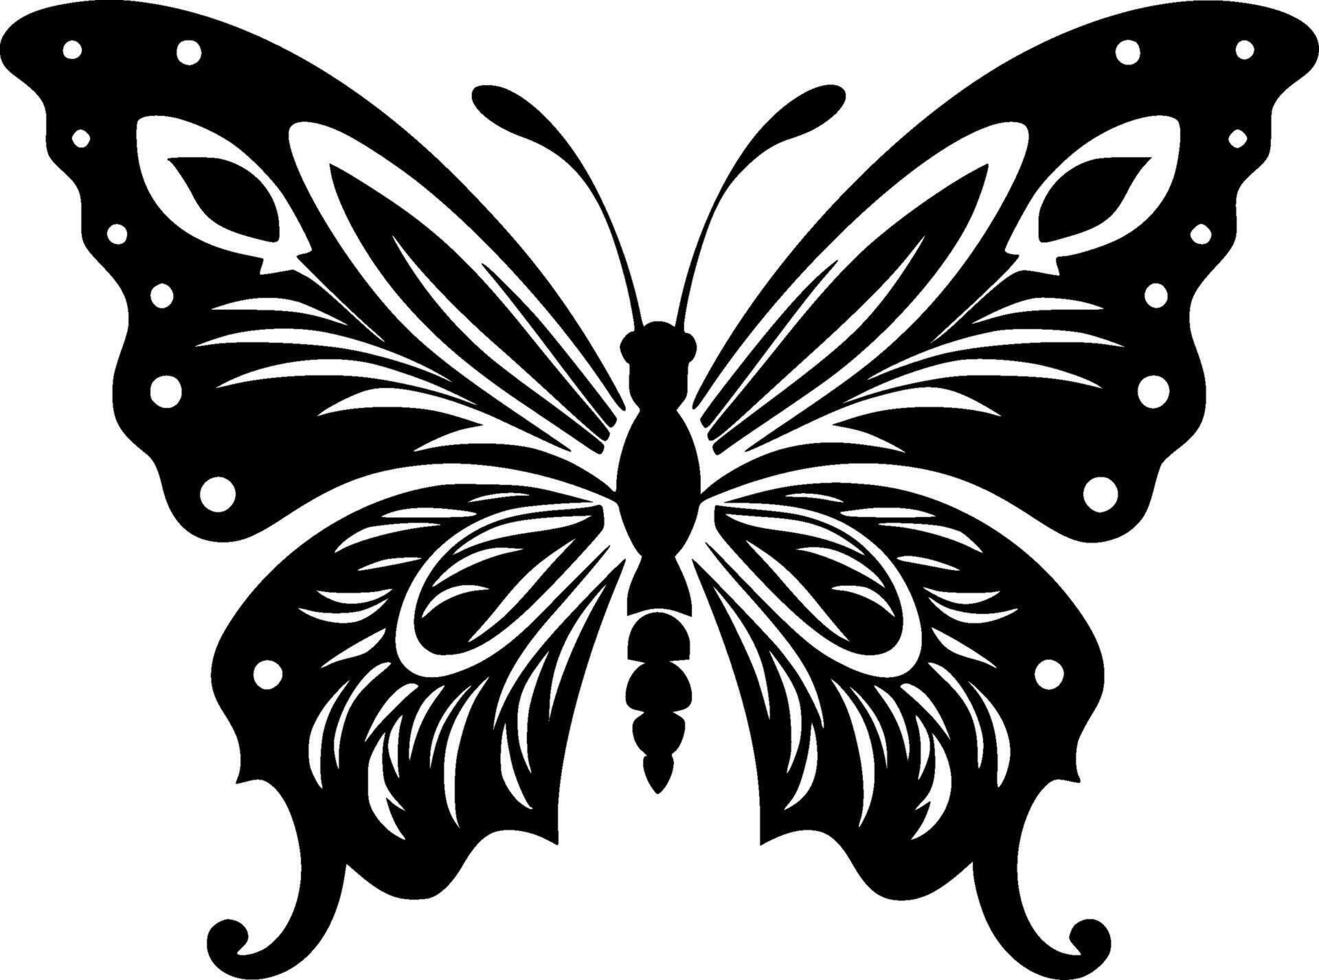 mariposa - negro y blanco aislado icono - vector ilustración